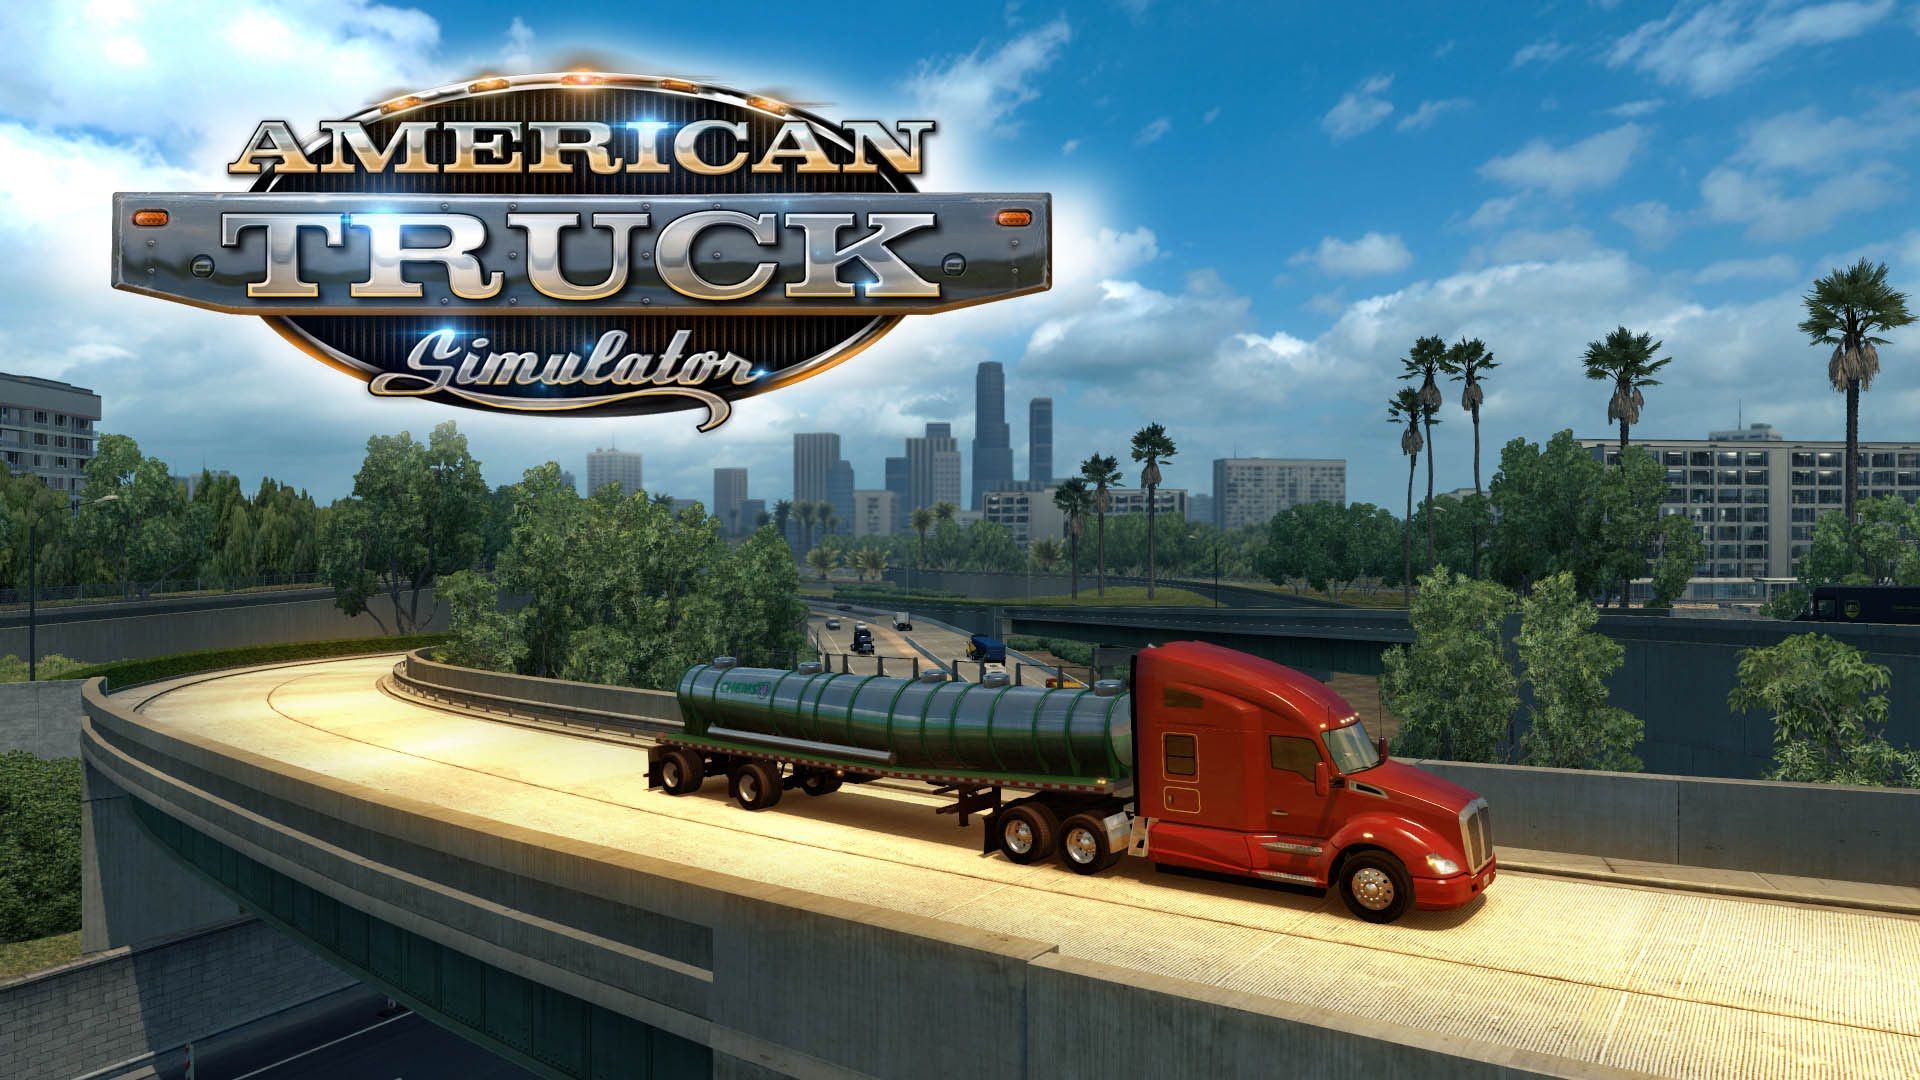 American Truck Simulator Full Version Free Download